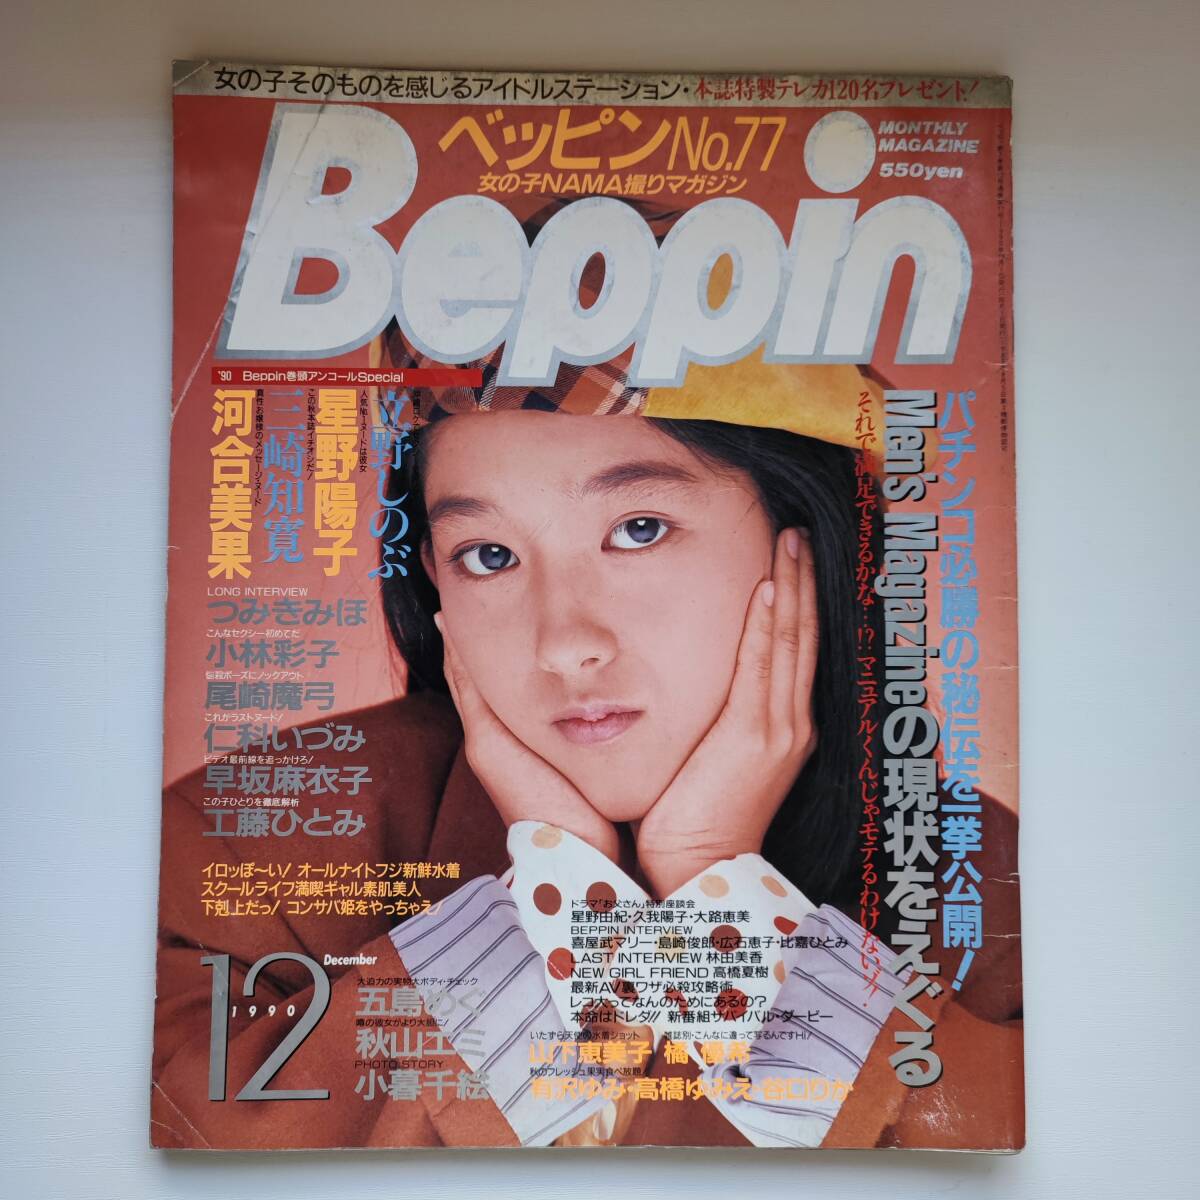 【雑誌】Beppin ベッピン NO.77 1990年12月 英知出版_画像1